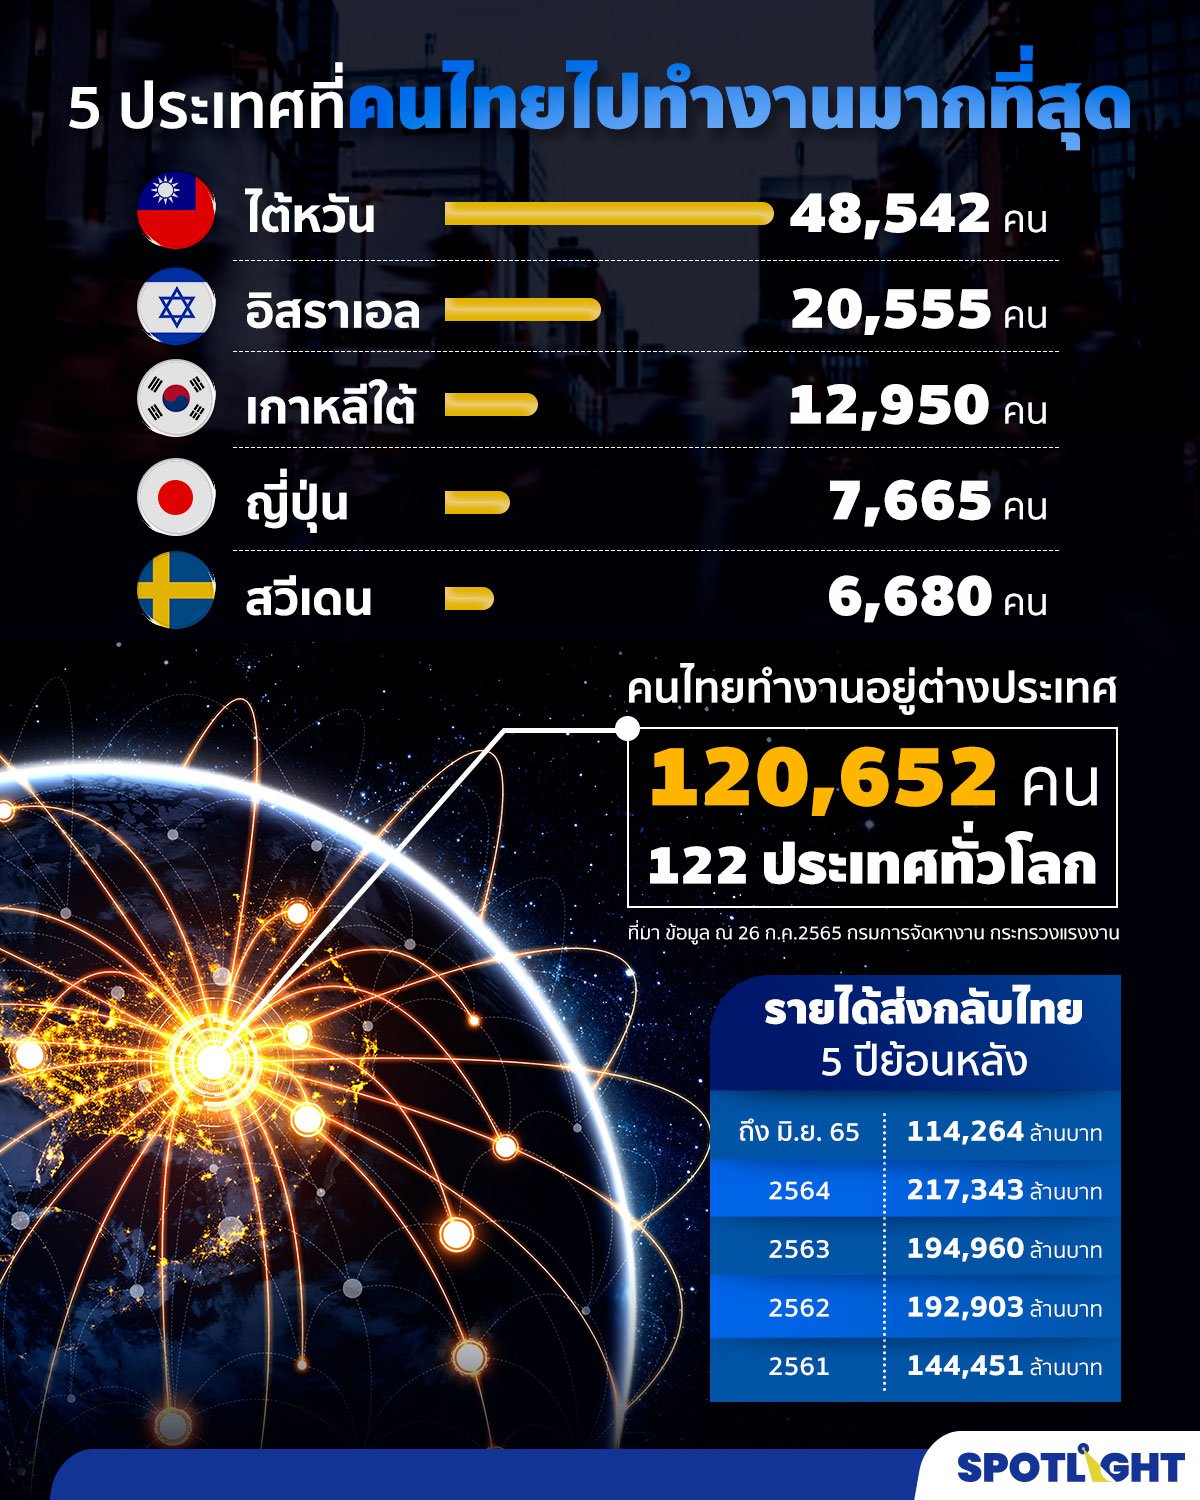 สถิติคนไทยทำงานต่างประเทศ